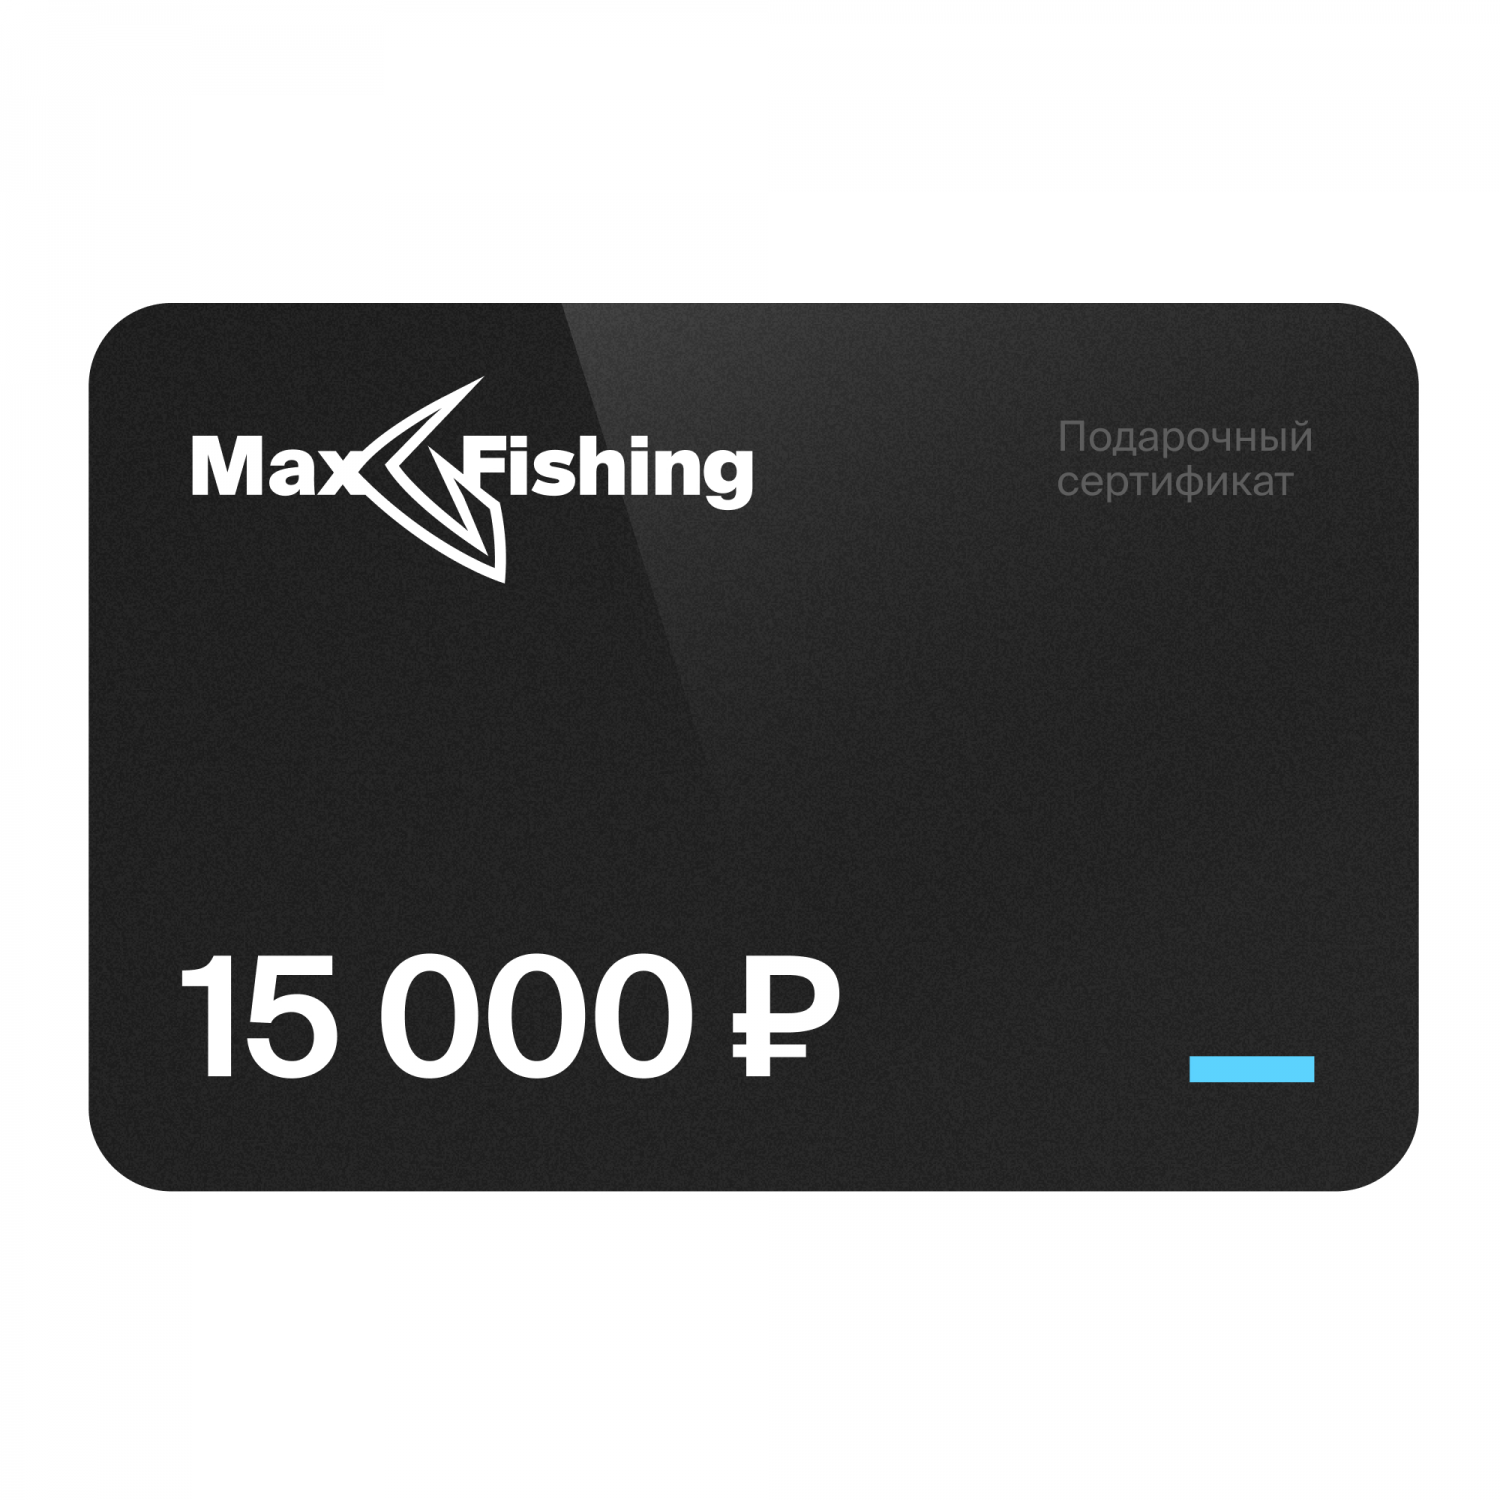 Подарочный сертификат MaxFishing 15 000 ₽ подарочный сертификат maxfishing 20